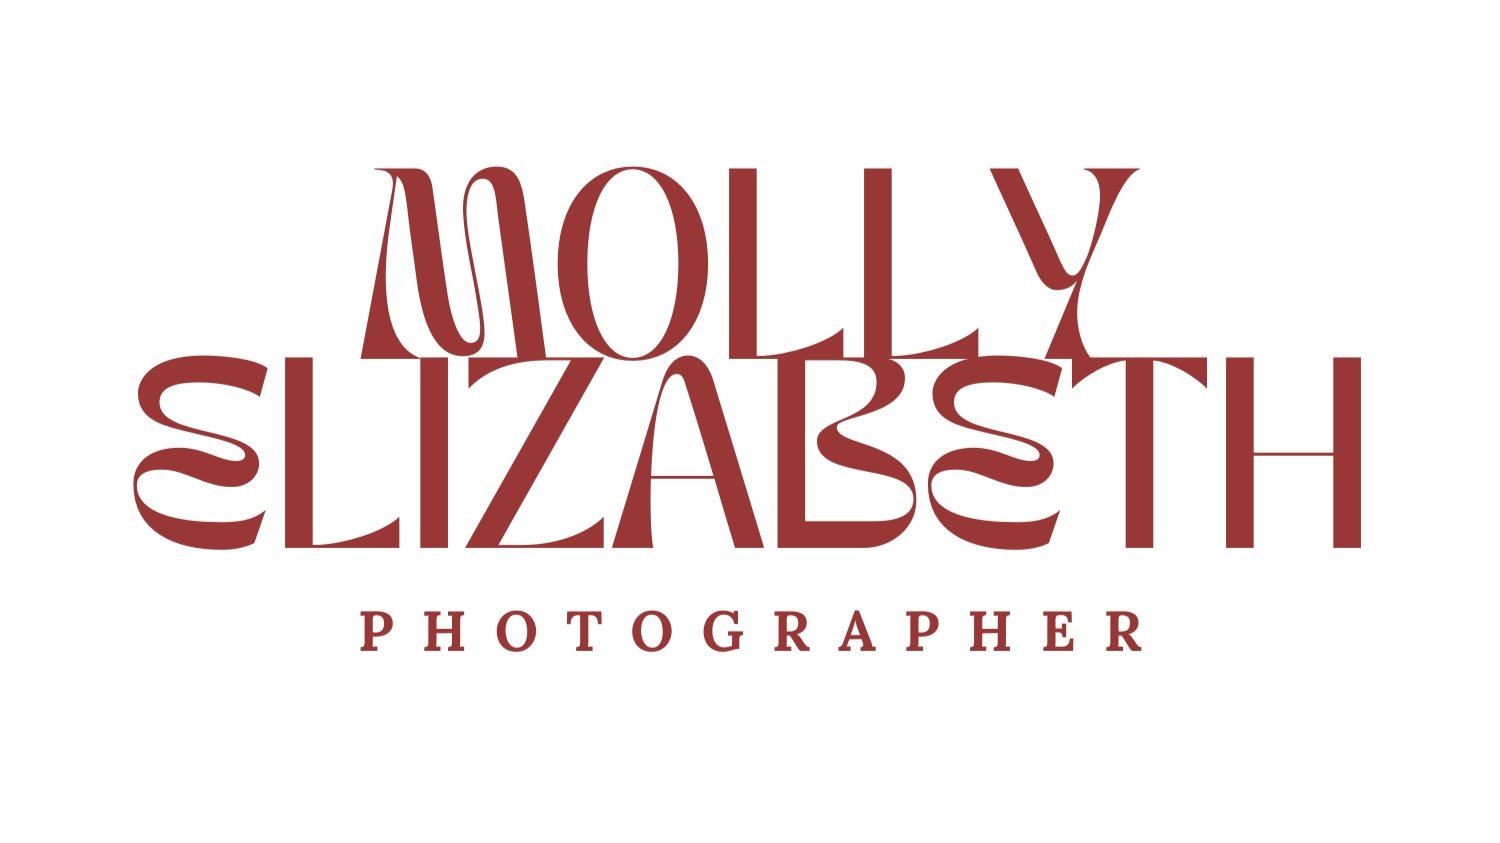 Molly Elizabeth